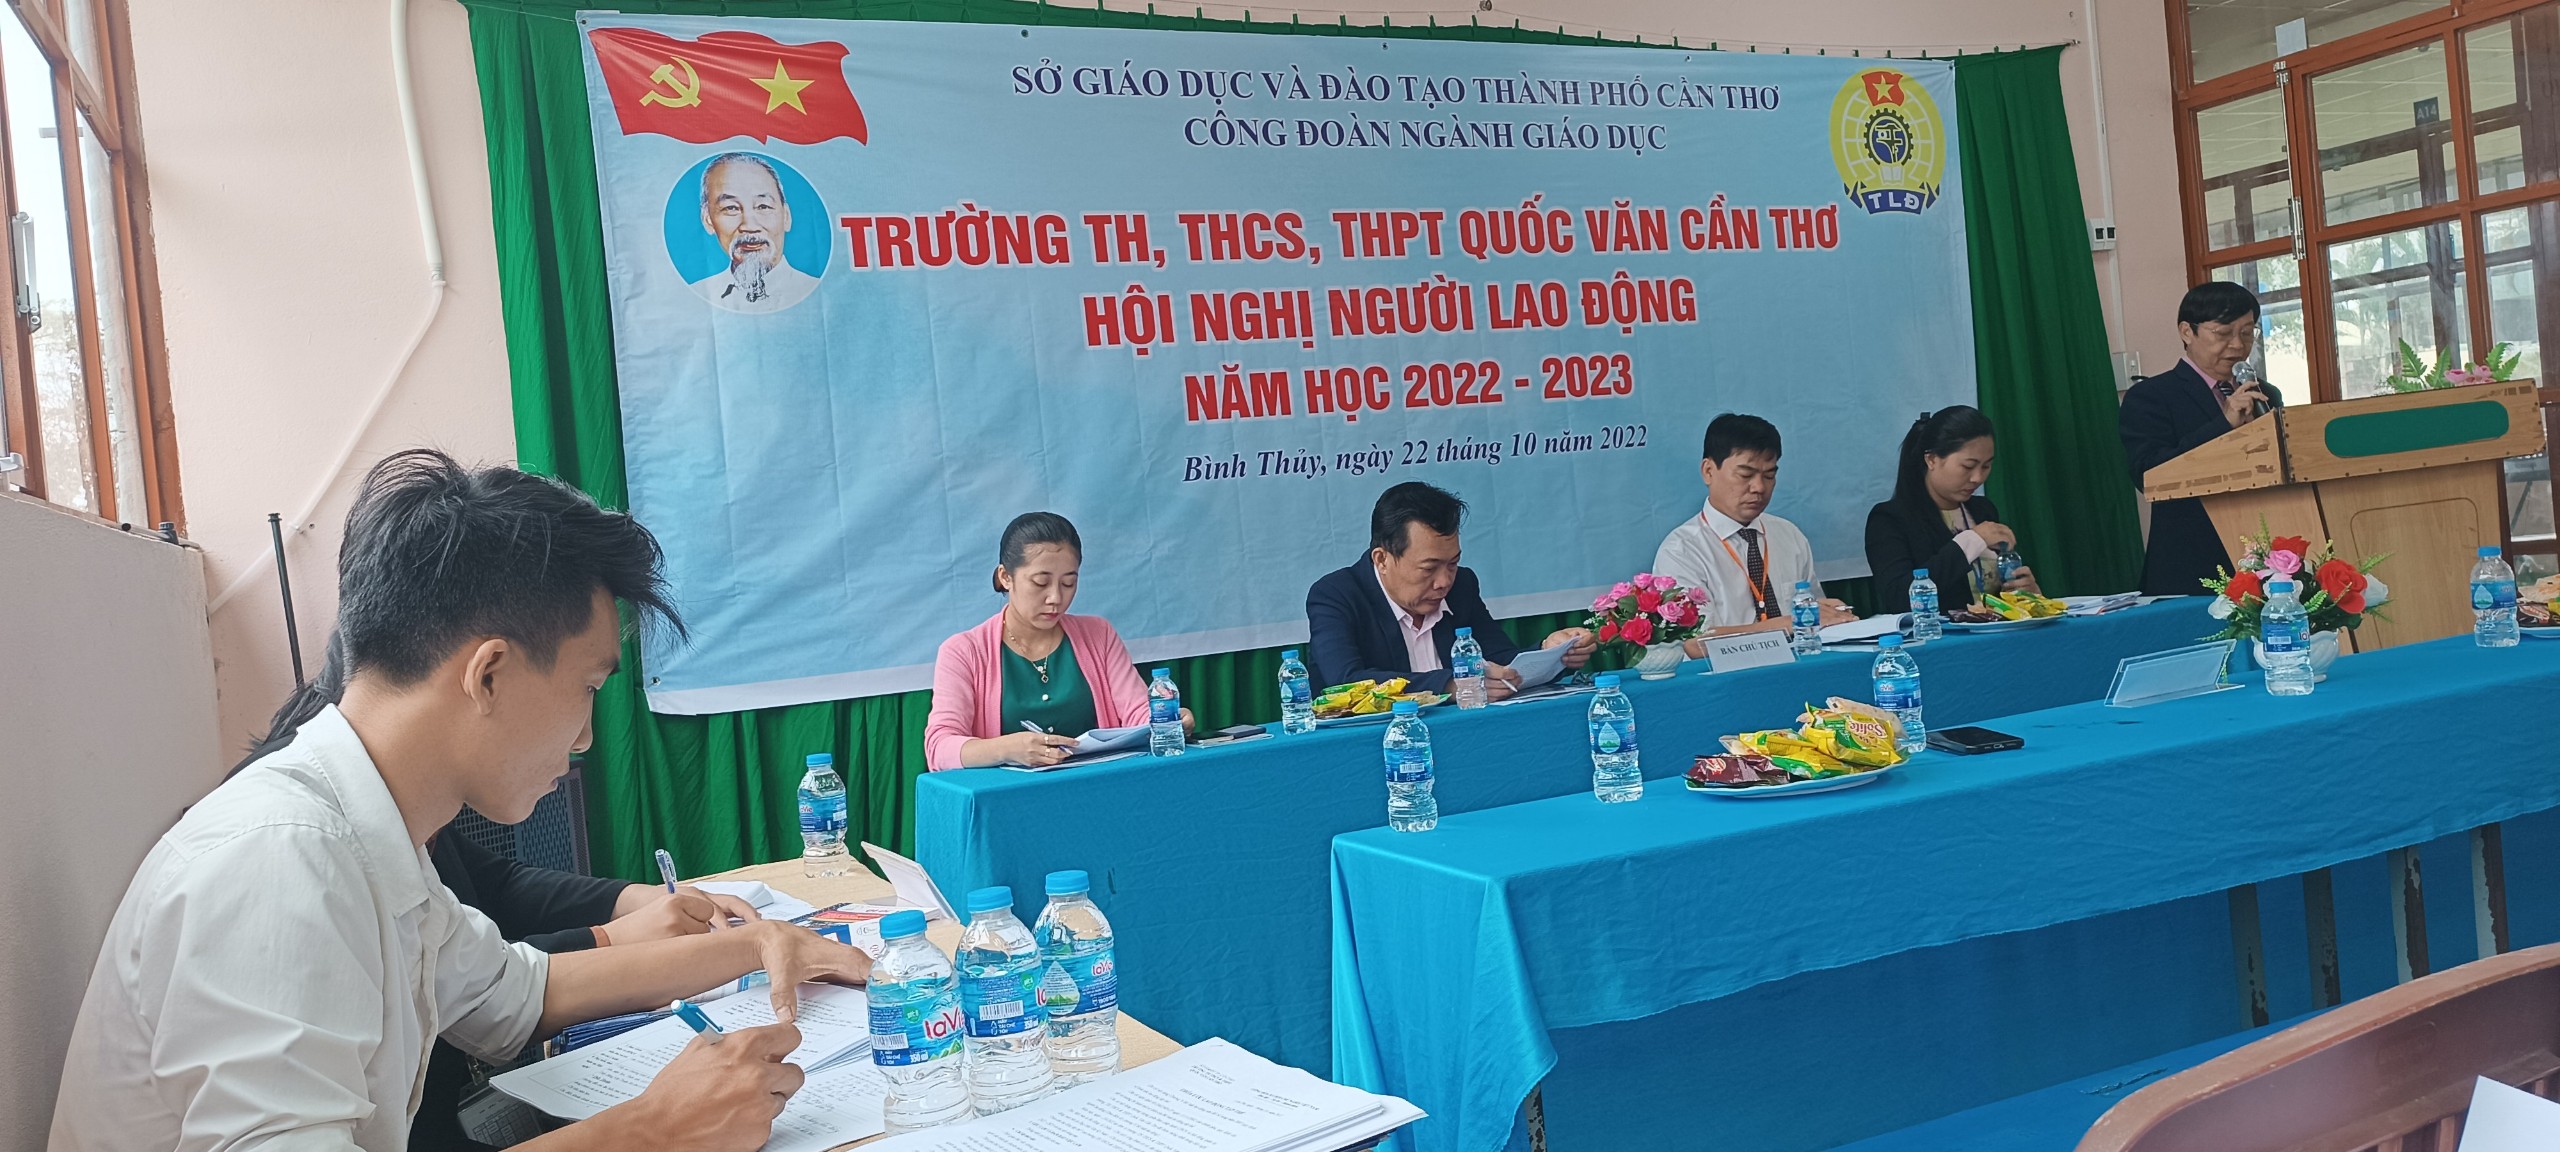 Trường Quốc Văn Cần Thơ tổ chức Hội nghị người lao động năm học 2022-2023